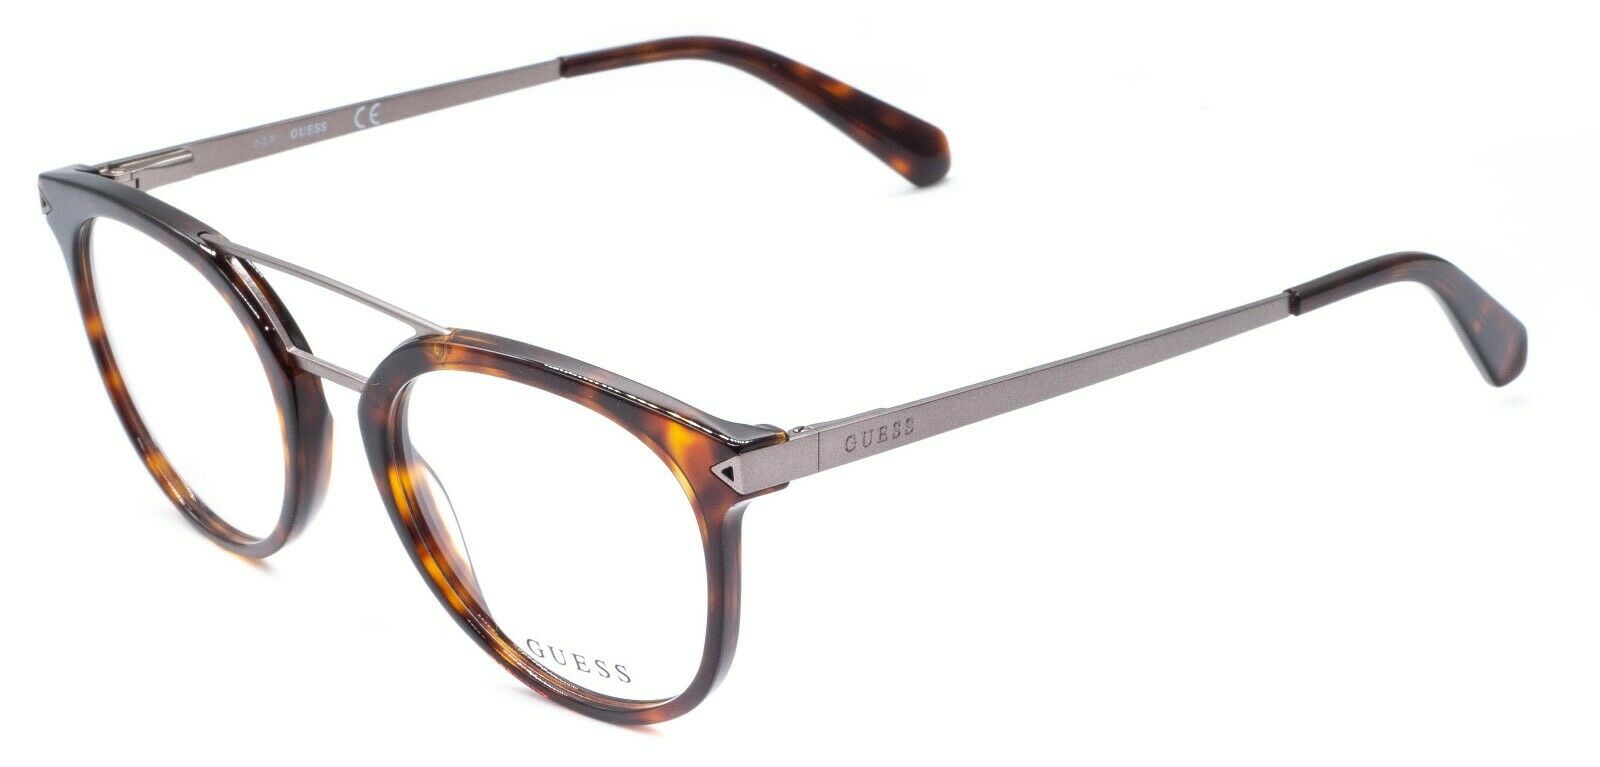 GUESS GU1964 052 50mm Eyewear FRAMES Eyeglasses RX Optical BNIB New - TRUSTED